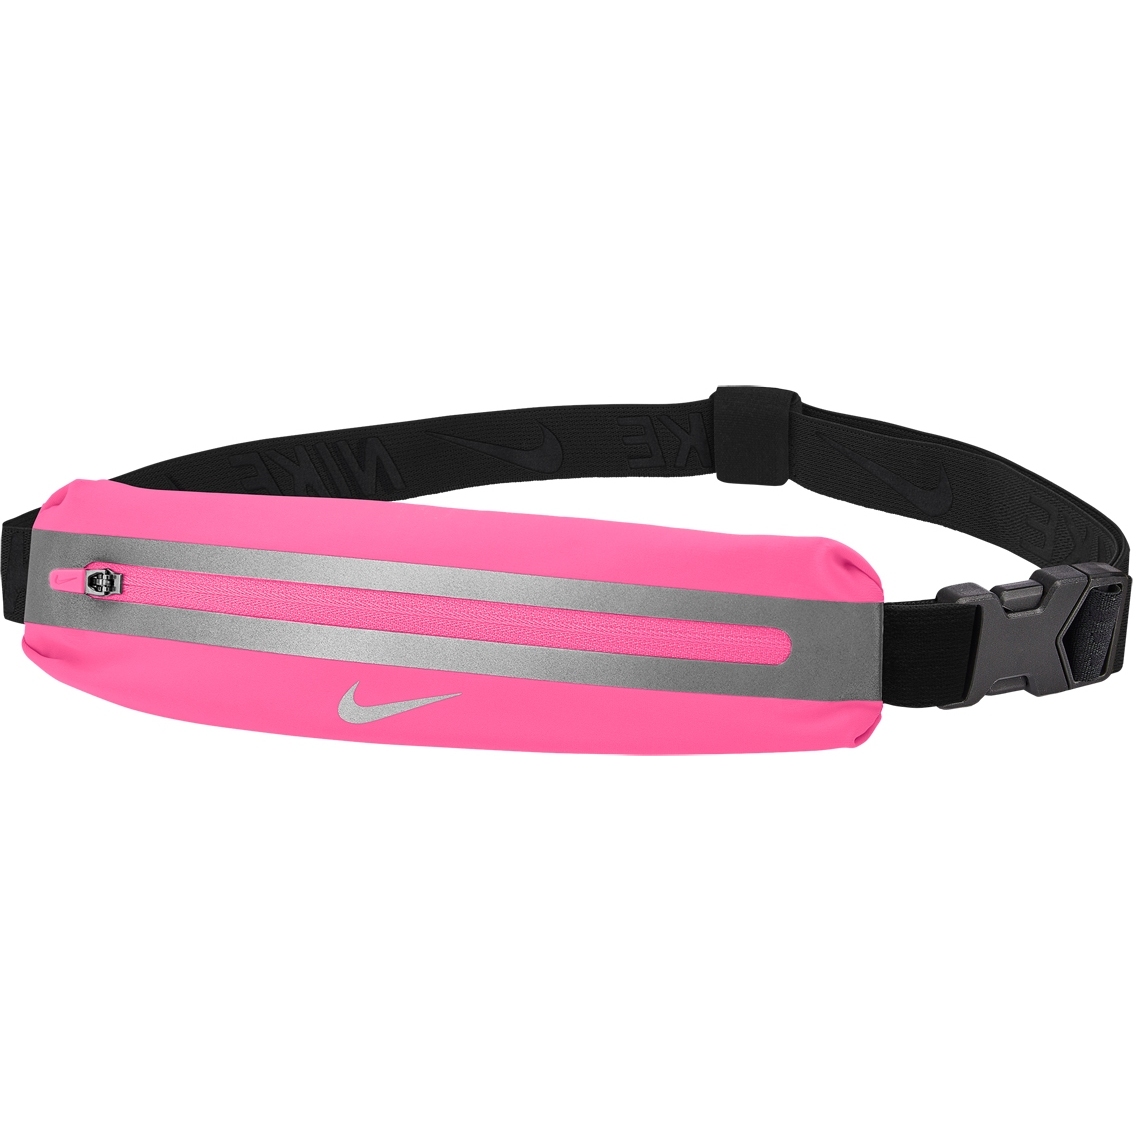 Produktbild von Nike Slim Waistpack 3.0 Gürteltasche - hyper pink/black/silver